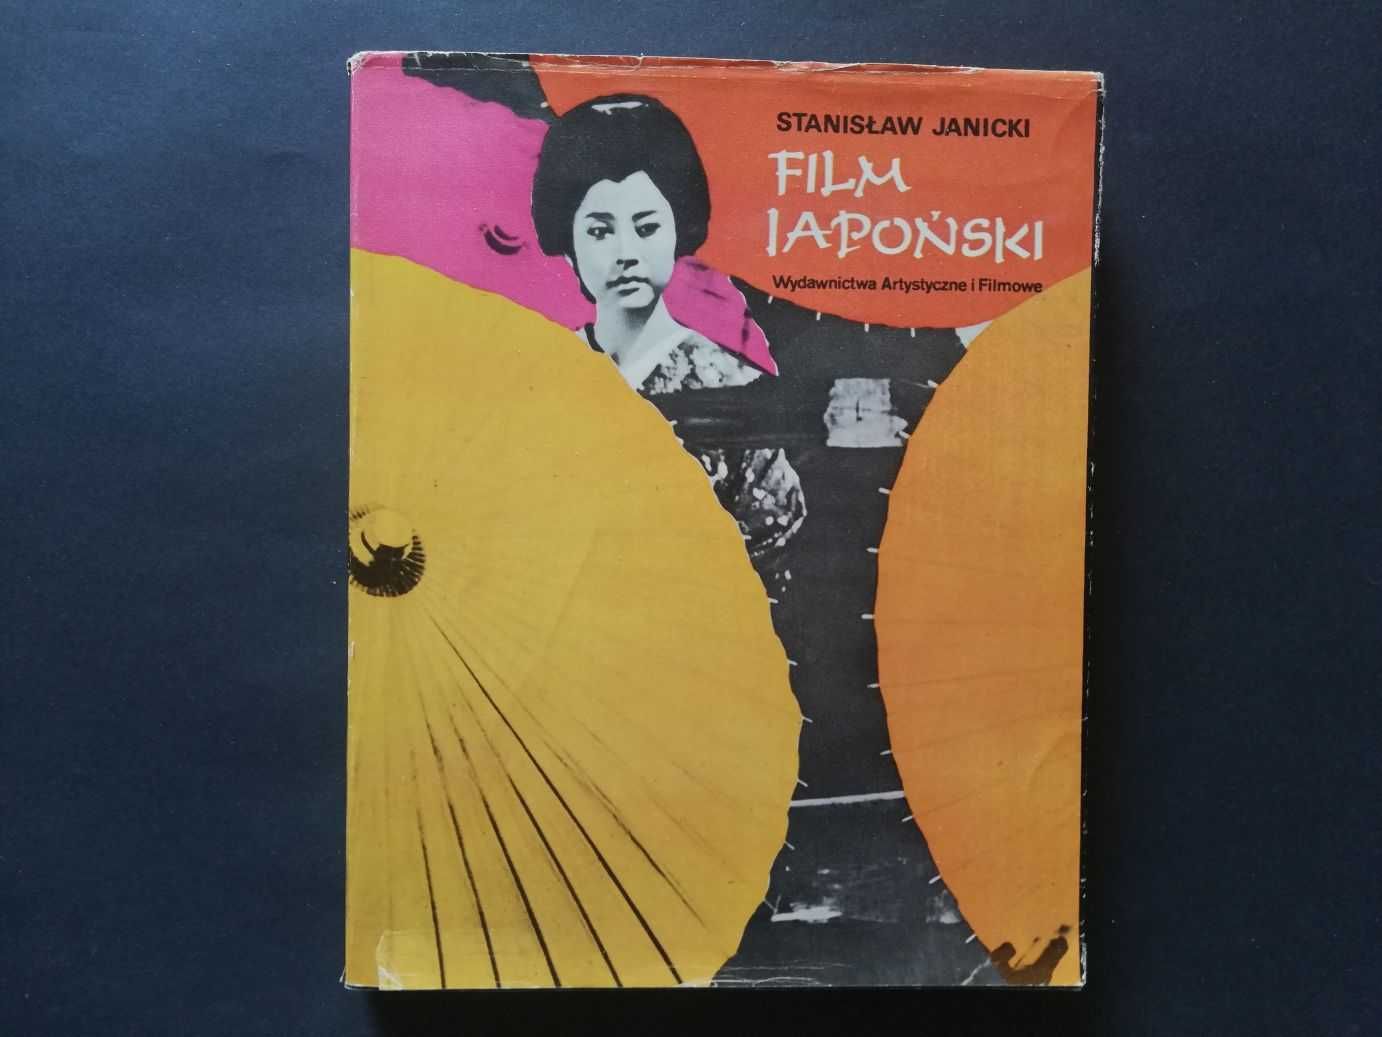 Film Japoński – Stanisław Janicki